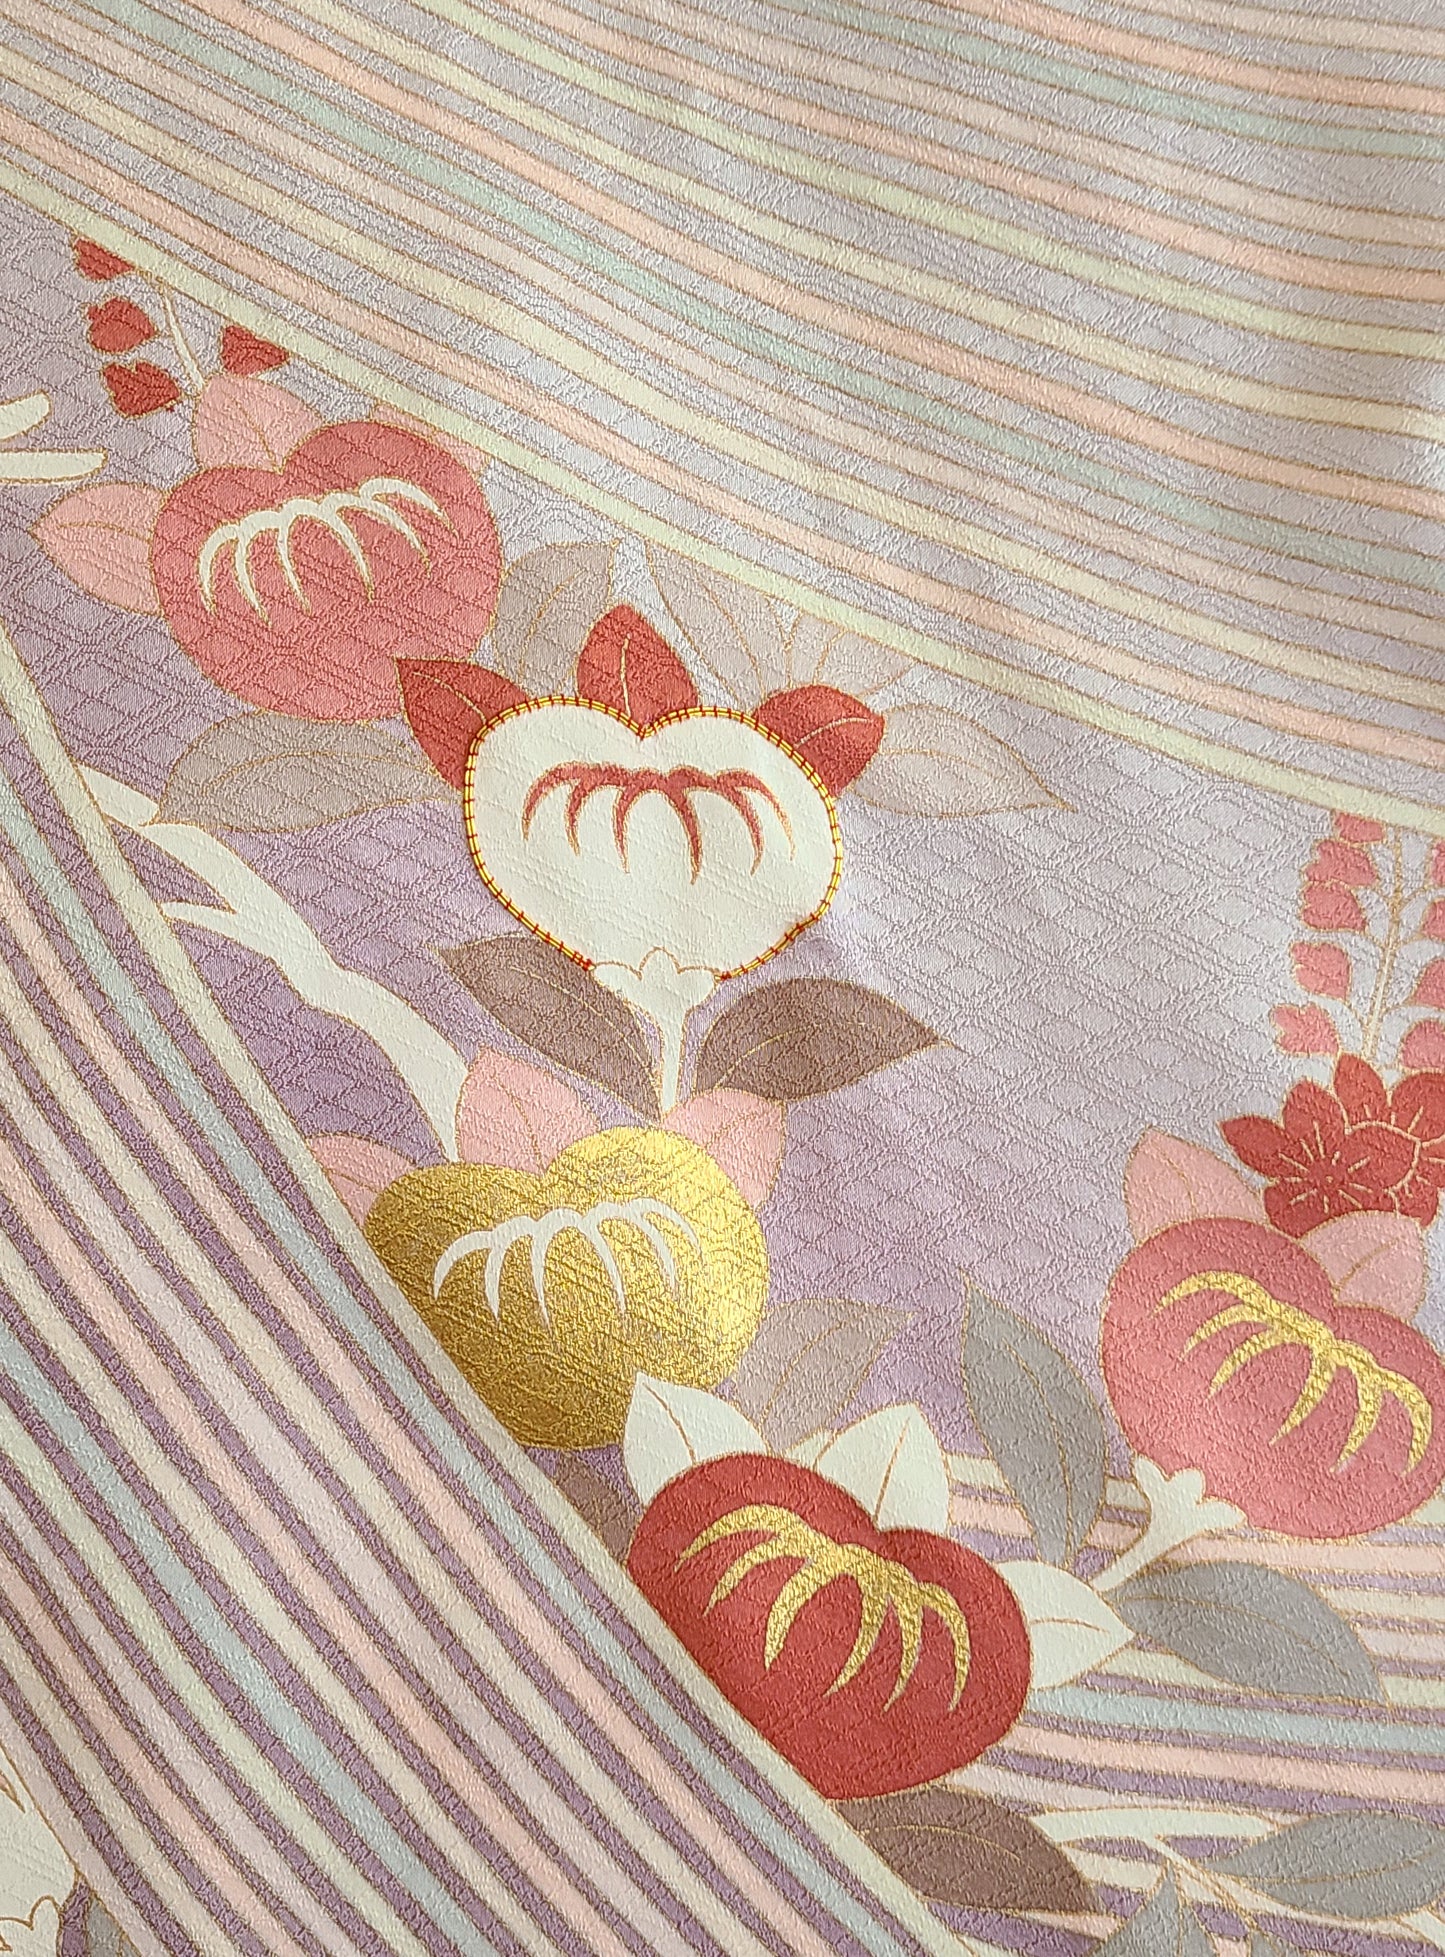 Kimono Cover Up -Shades of Lavender, S/M/L